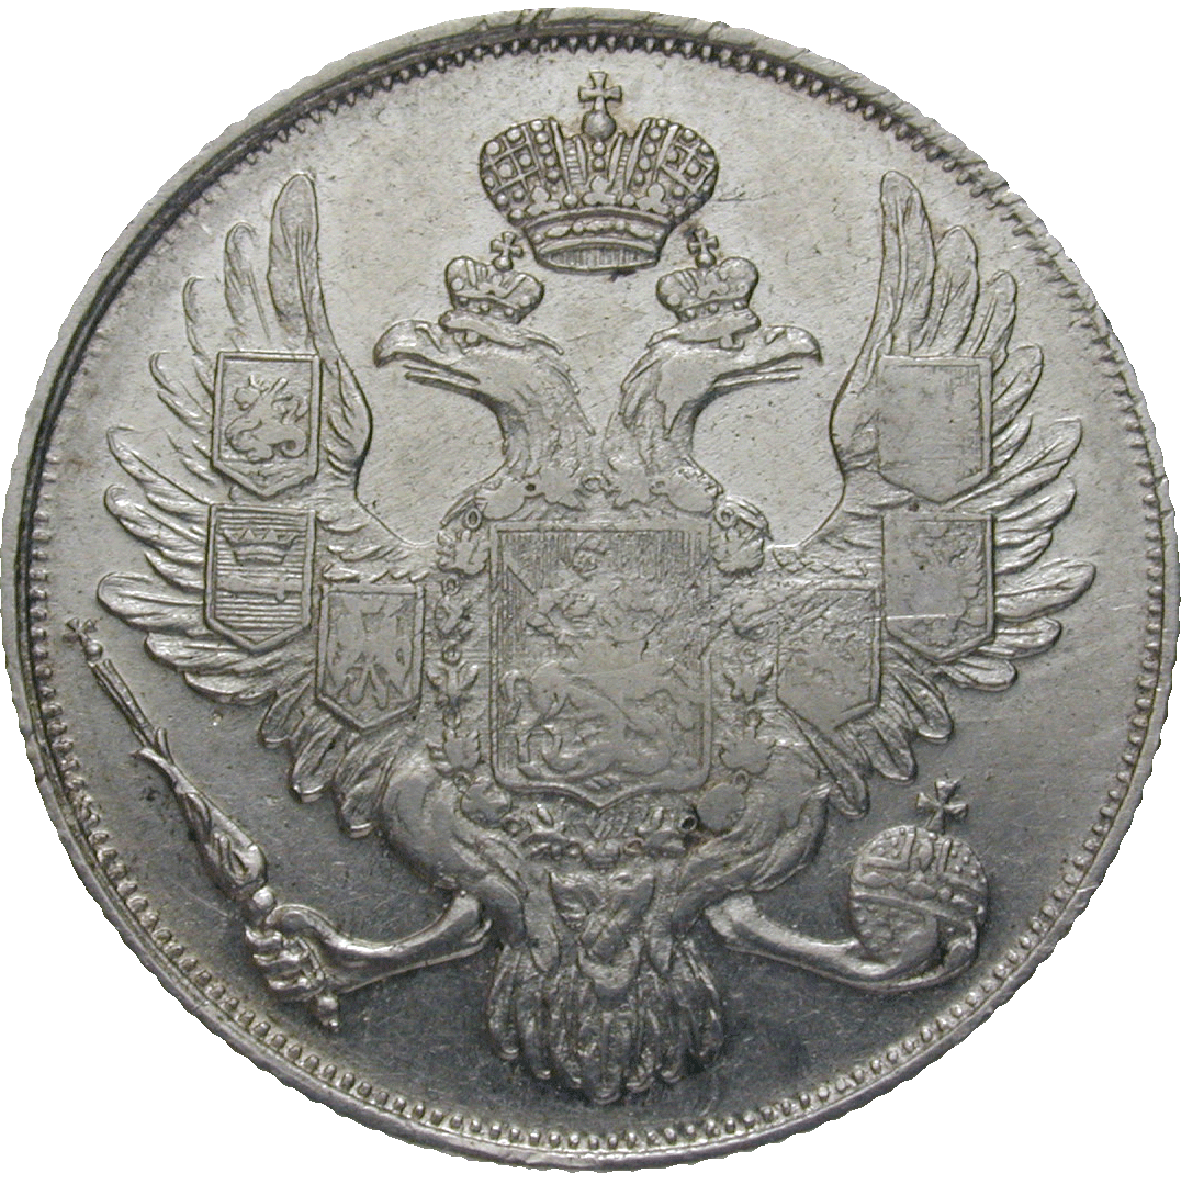 Russian Empire, Nicholas I, 3 Rubles 1831 (obverse)